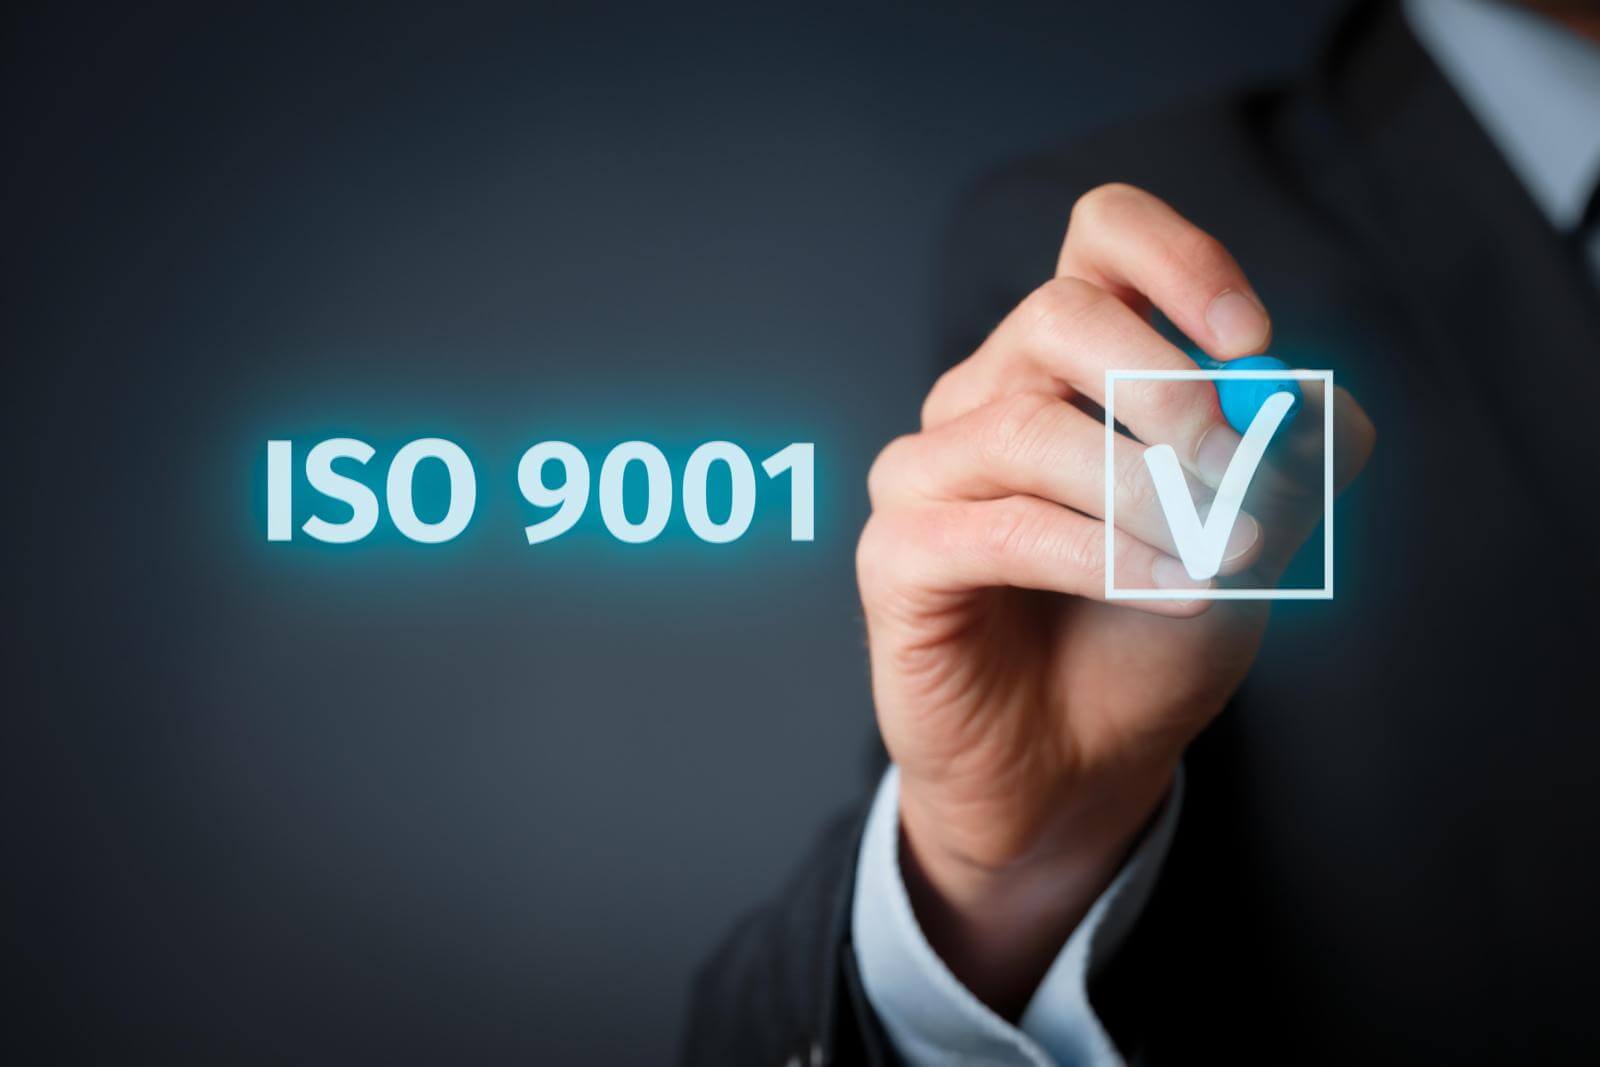 Är ISO 9001:2008 fortfarande giltig?